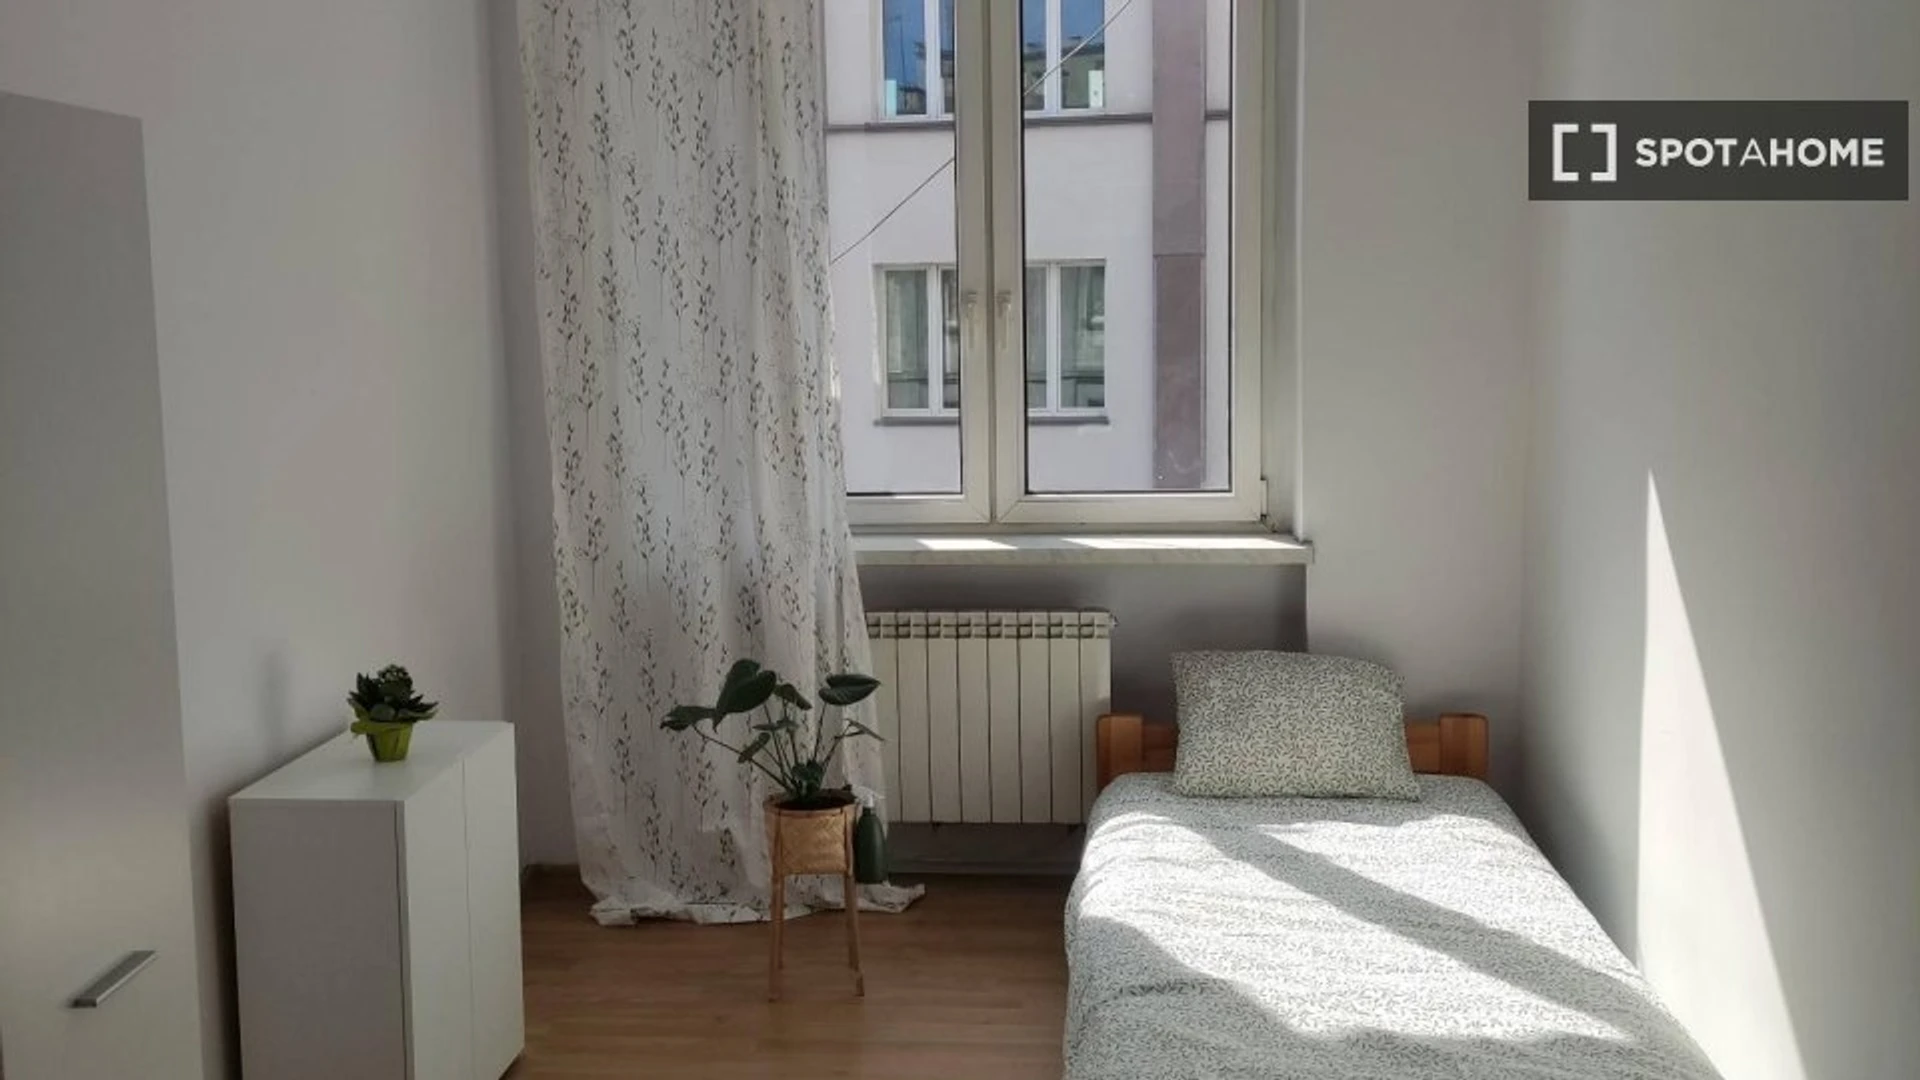 Appartement moderne et lumineux à Katowice